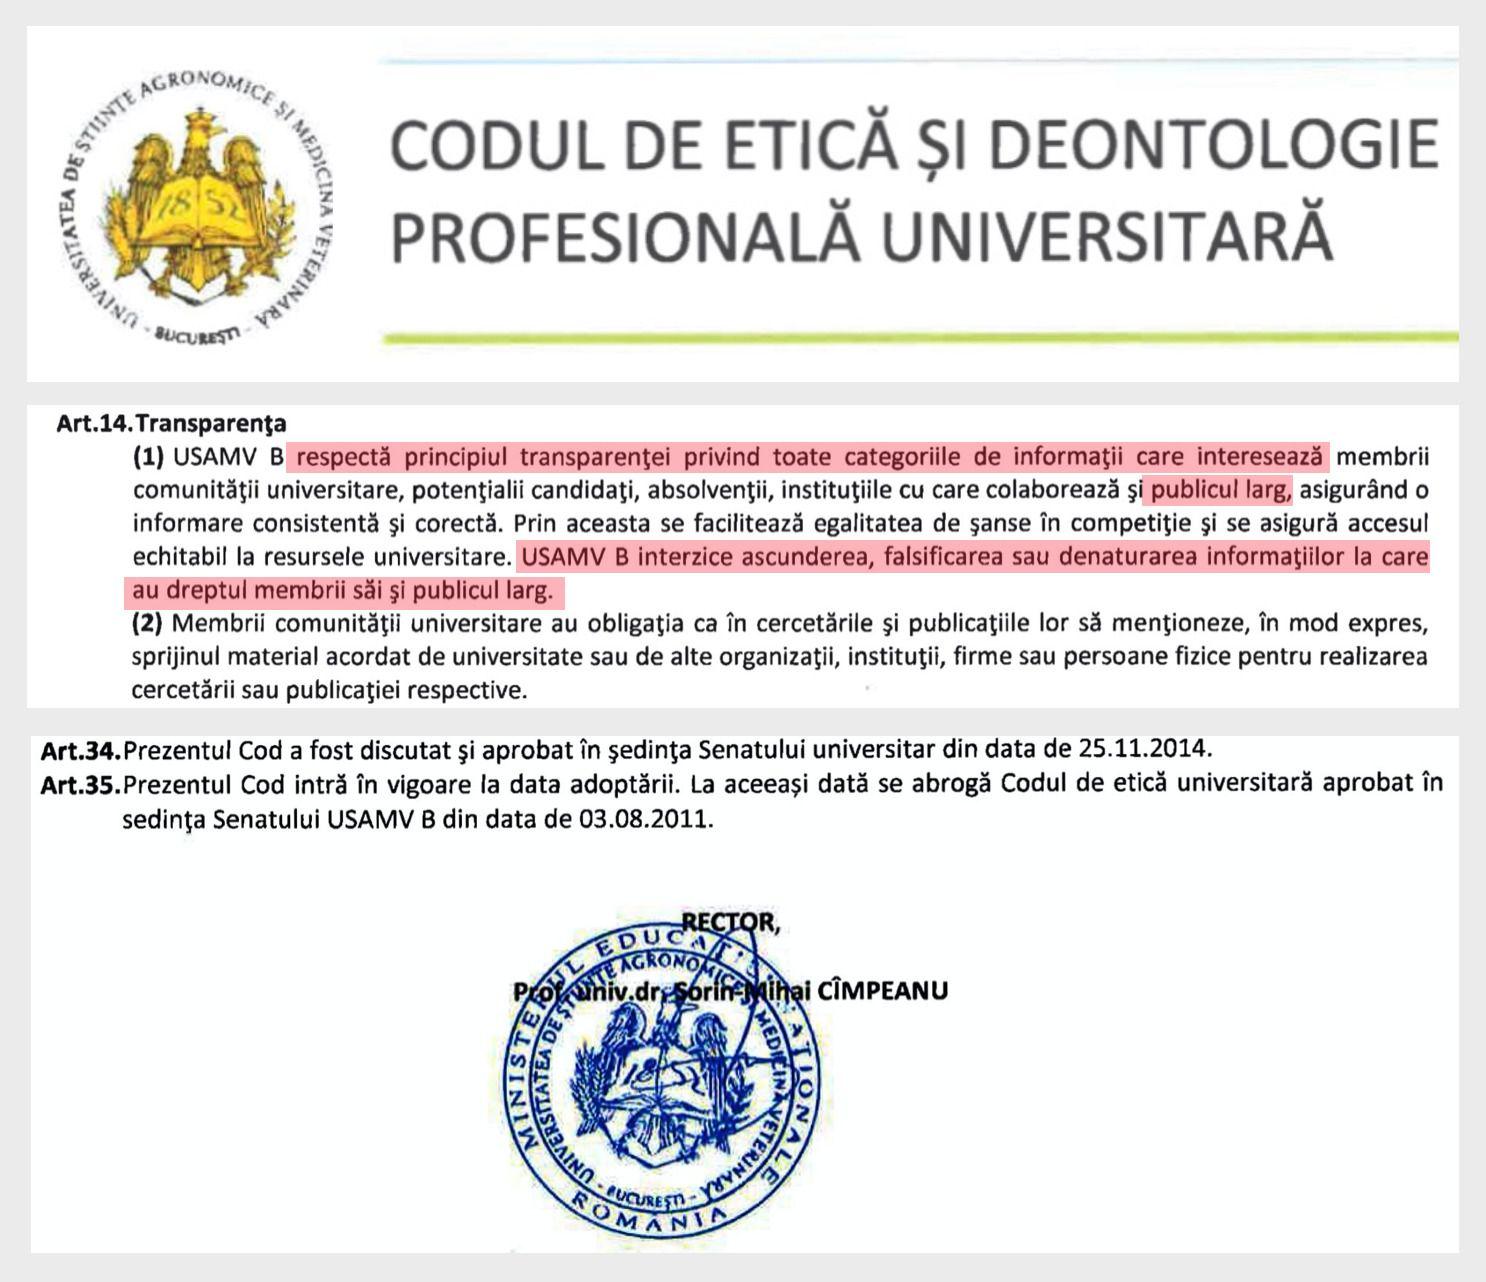 Codul etic al USAMV București, intrat în vigoare în 2014, interzice cadrelor universitare să ascundă informații de interes pentru publicul larg. Sursa:<a target="_blank" href="https://www.usamv.ro/images/Documentele_Universitatii/cod-etic-deont-prof-univ.pdf"> usamv.ro</a>.